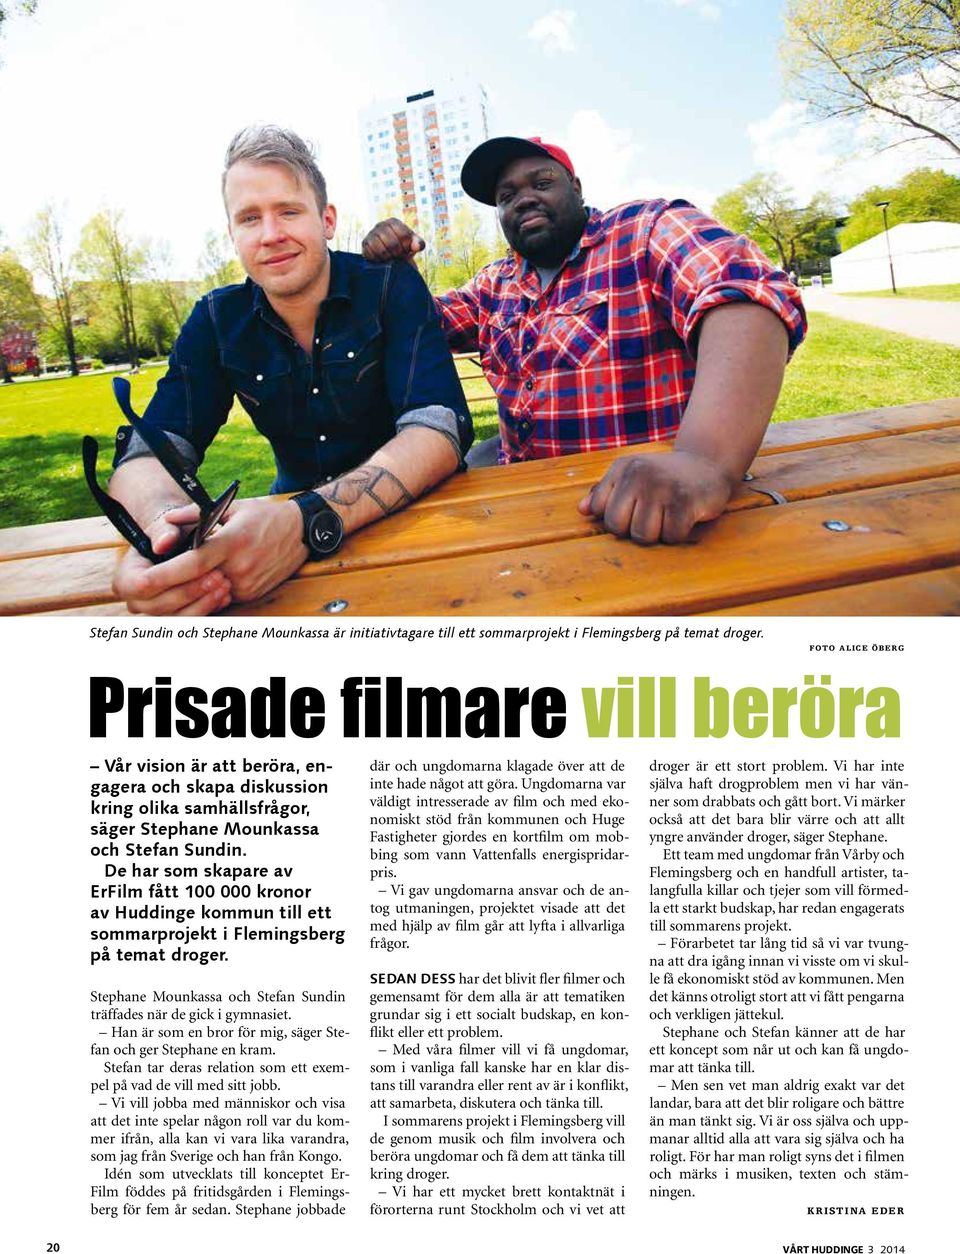 De har som skapare av ErFilm fått 100 000 kronor av Huddinge kommun till ett sommarprojekt i Flemingsberg på temat droger. Stephane Mounkassa och Stefan Sundin träffades när de gick i gymnasiet.